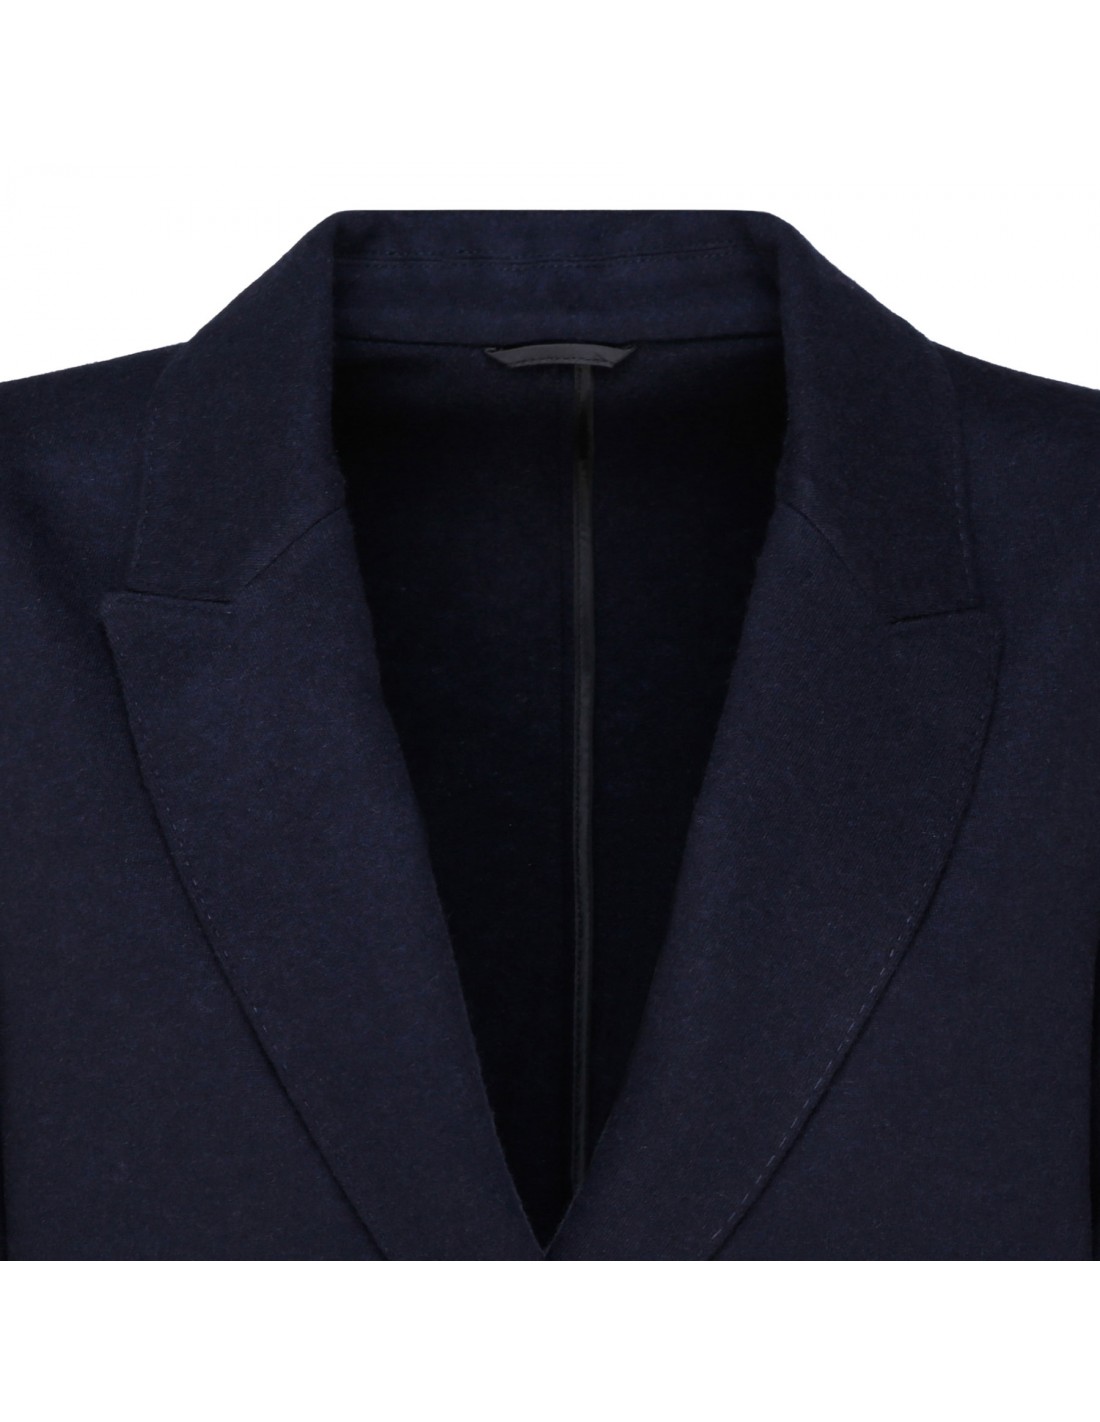 Suit-type cashmere jacket